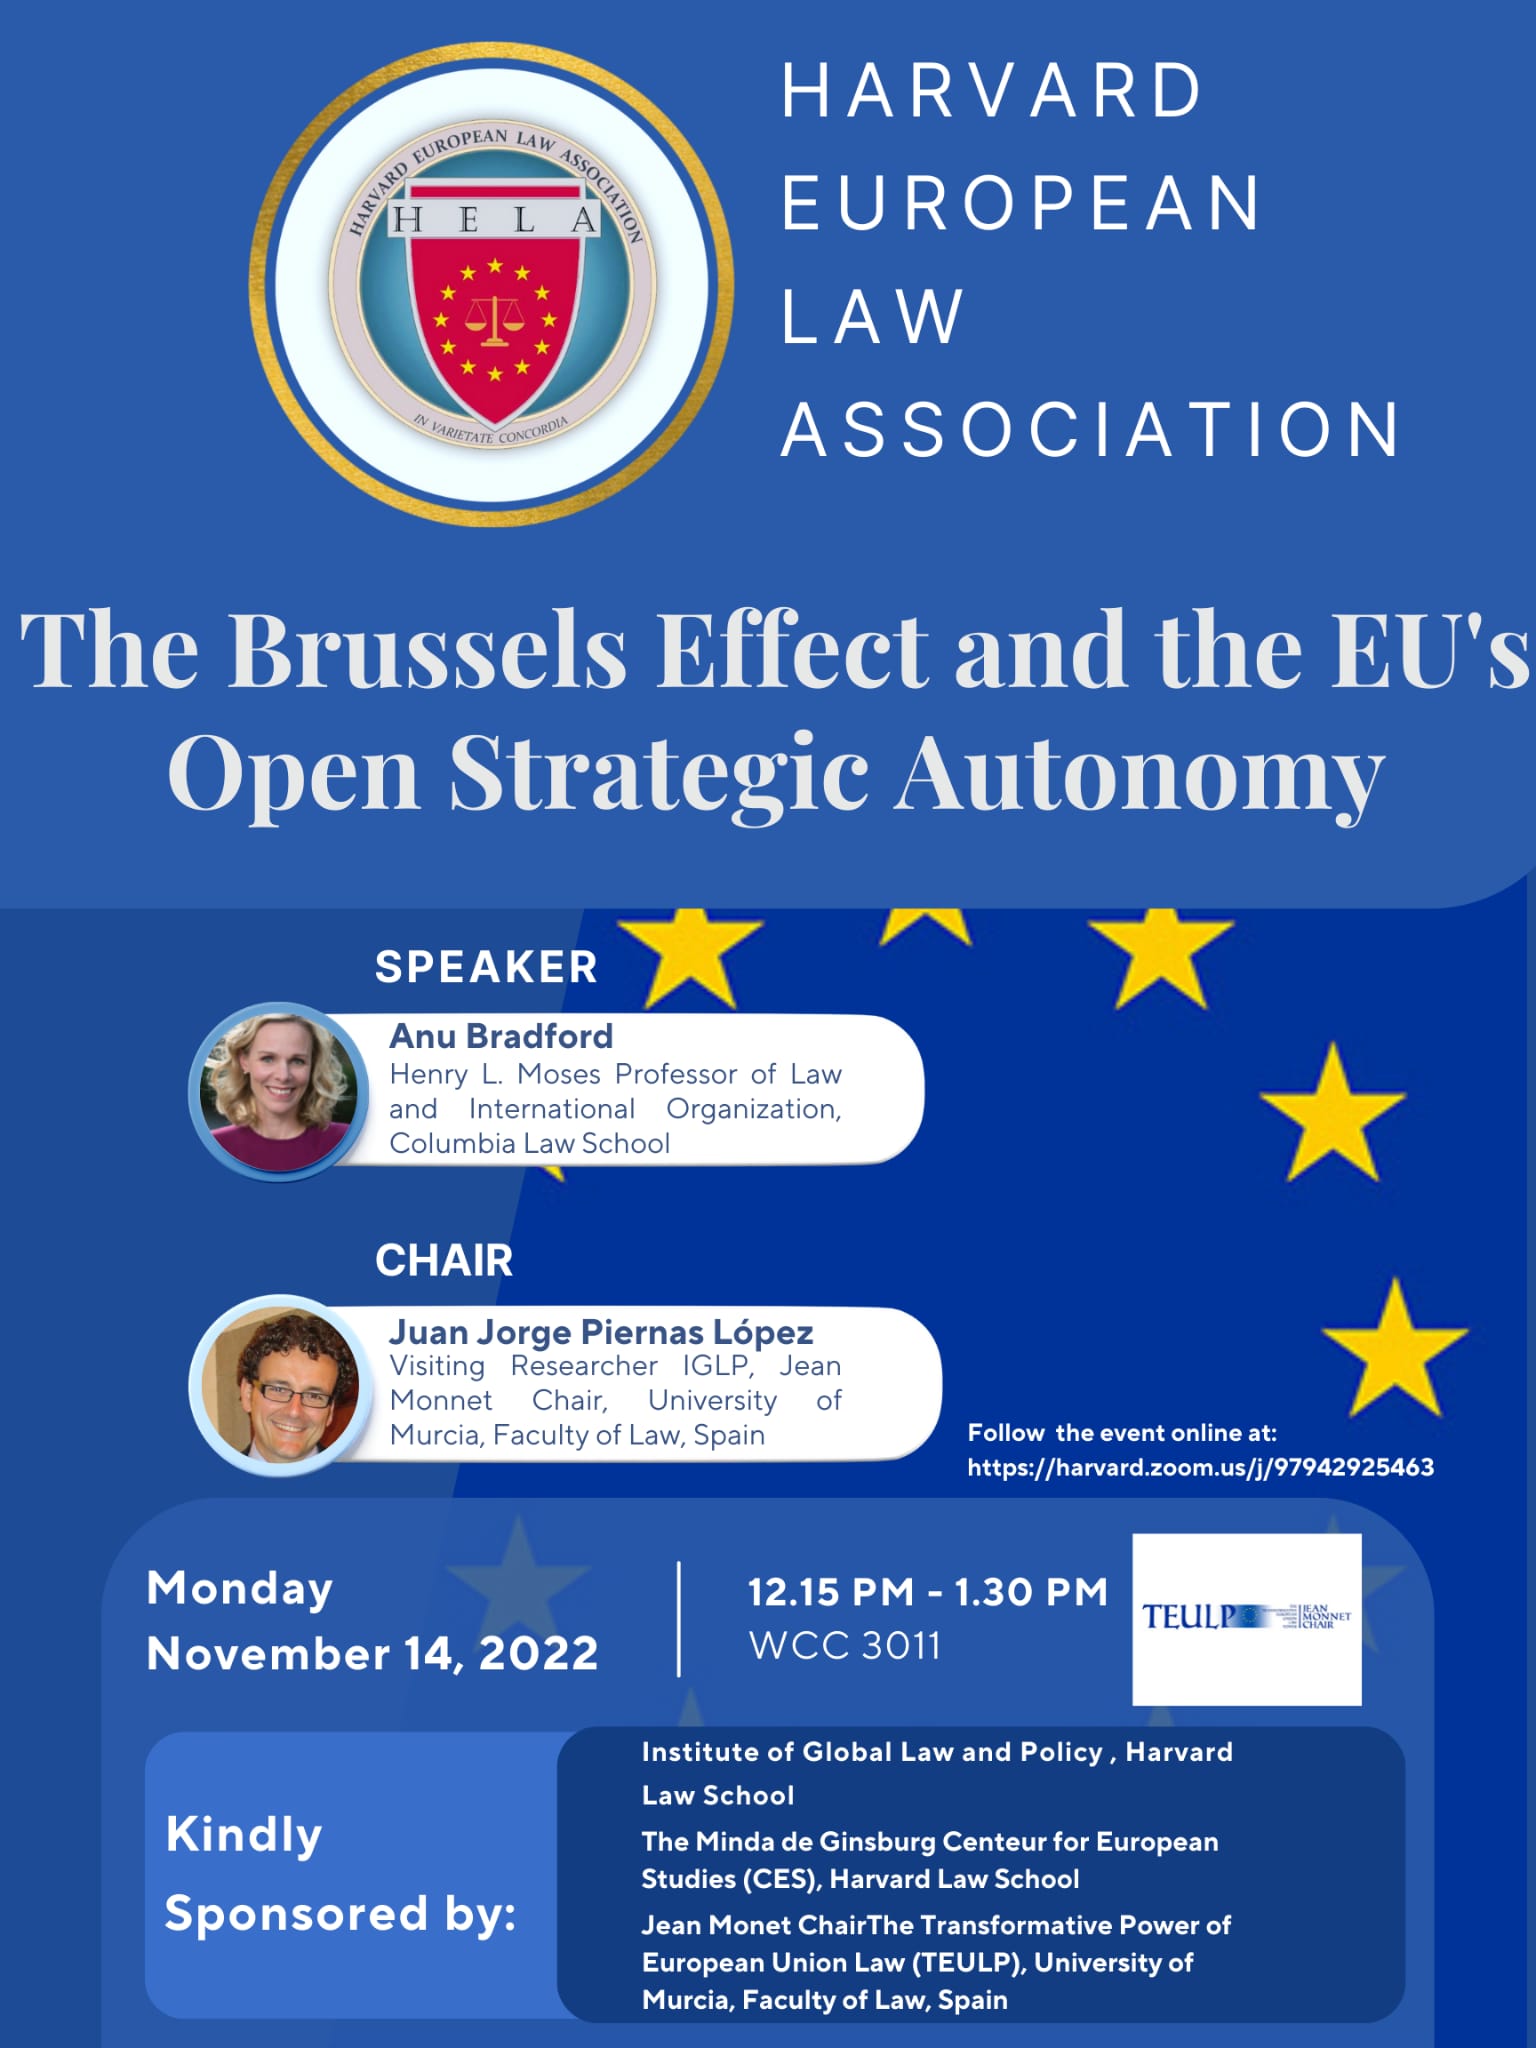 El profesor Jorge Piernas organiza seminario en la Universidad de Harvard sobre la Autonomía Estratégica Abierta de la Unión Europea